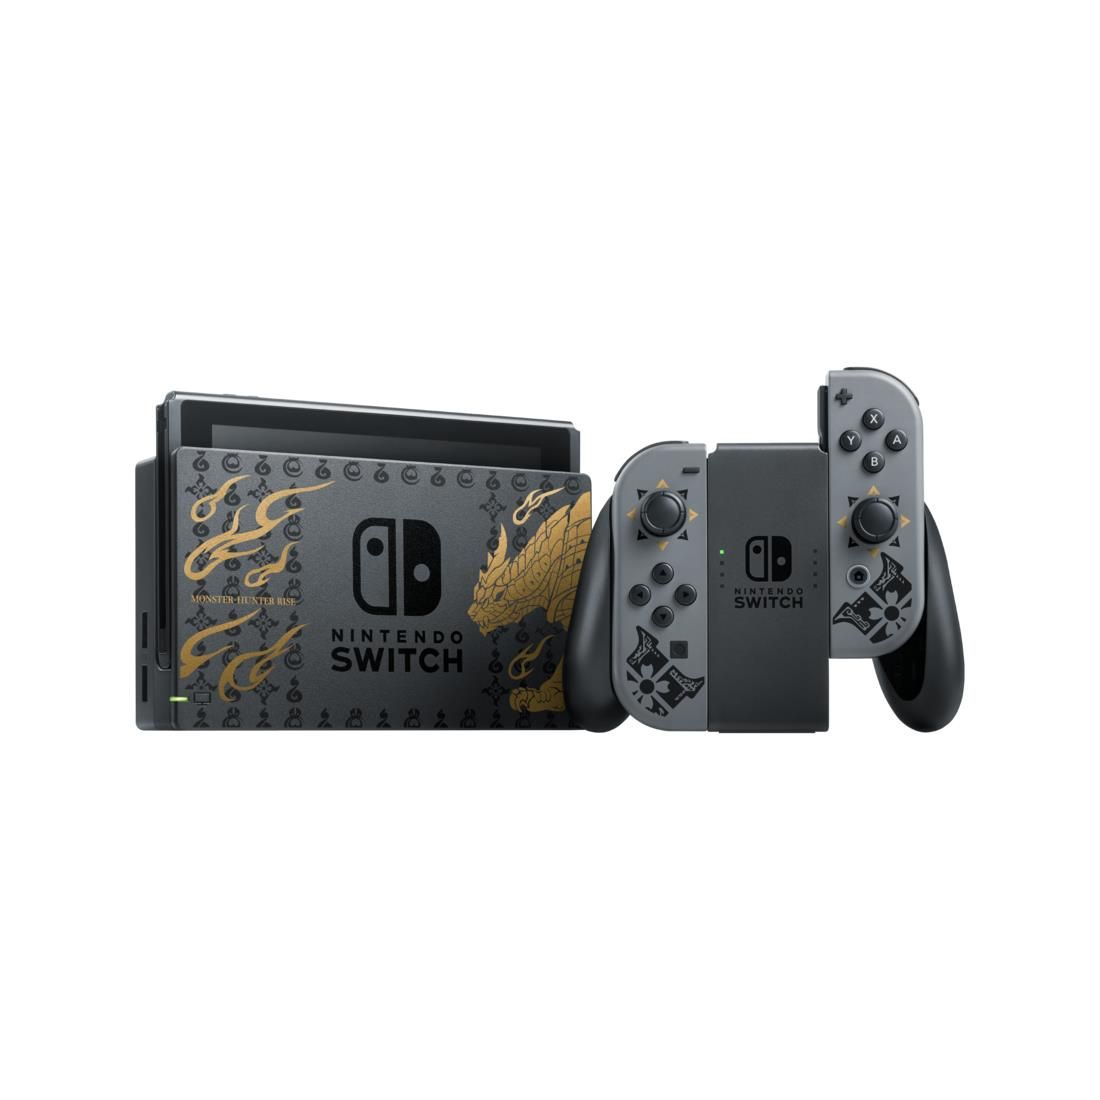 Nintendo Switch Edizione Speciale